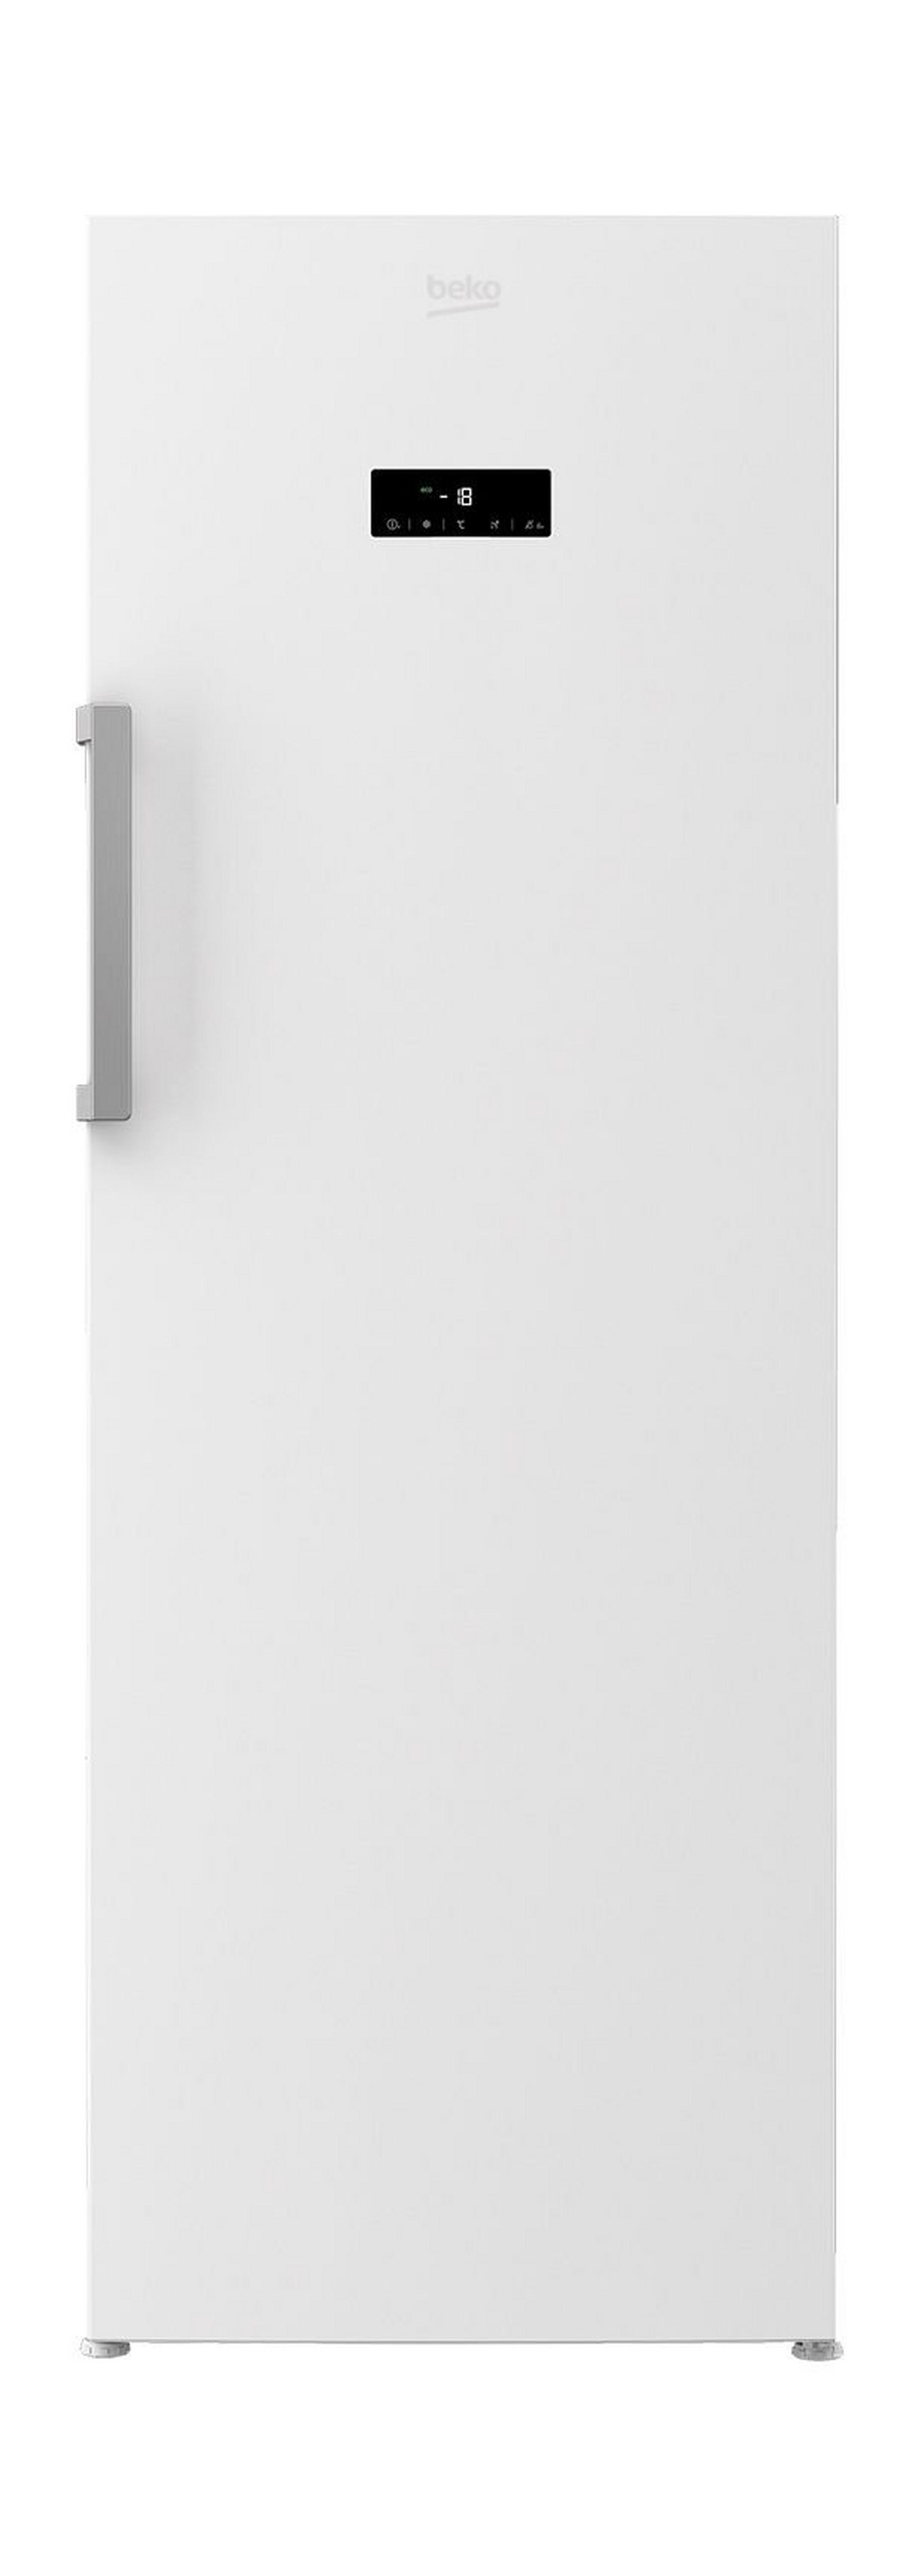 Beko 10 Cft. Upright Freezer (RFNE290E23W) - White